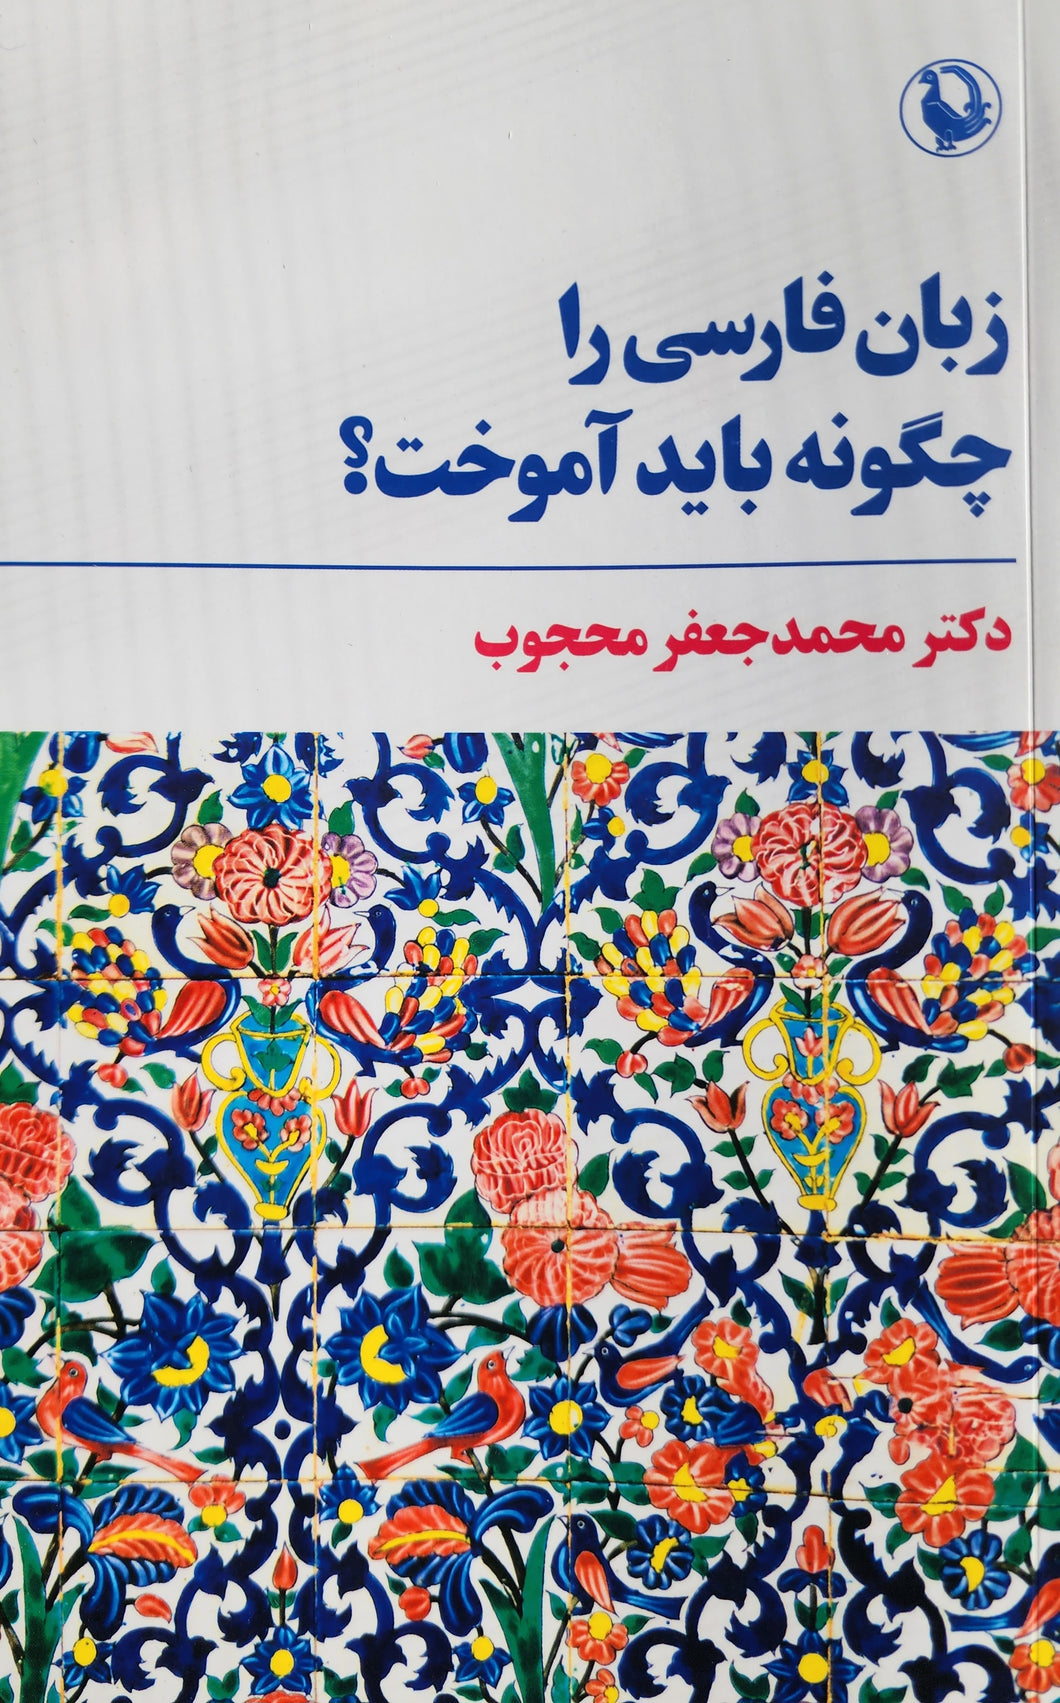 زبان فارسی را چگونه باید آموخت؟